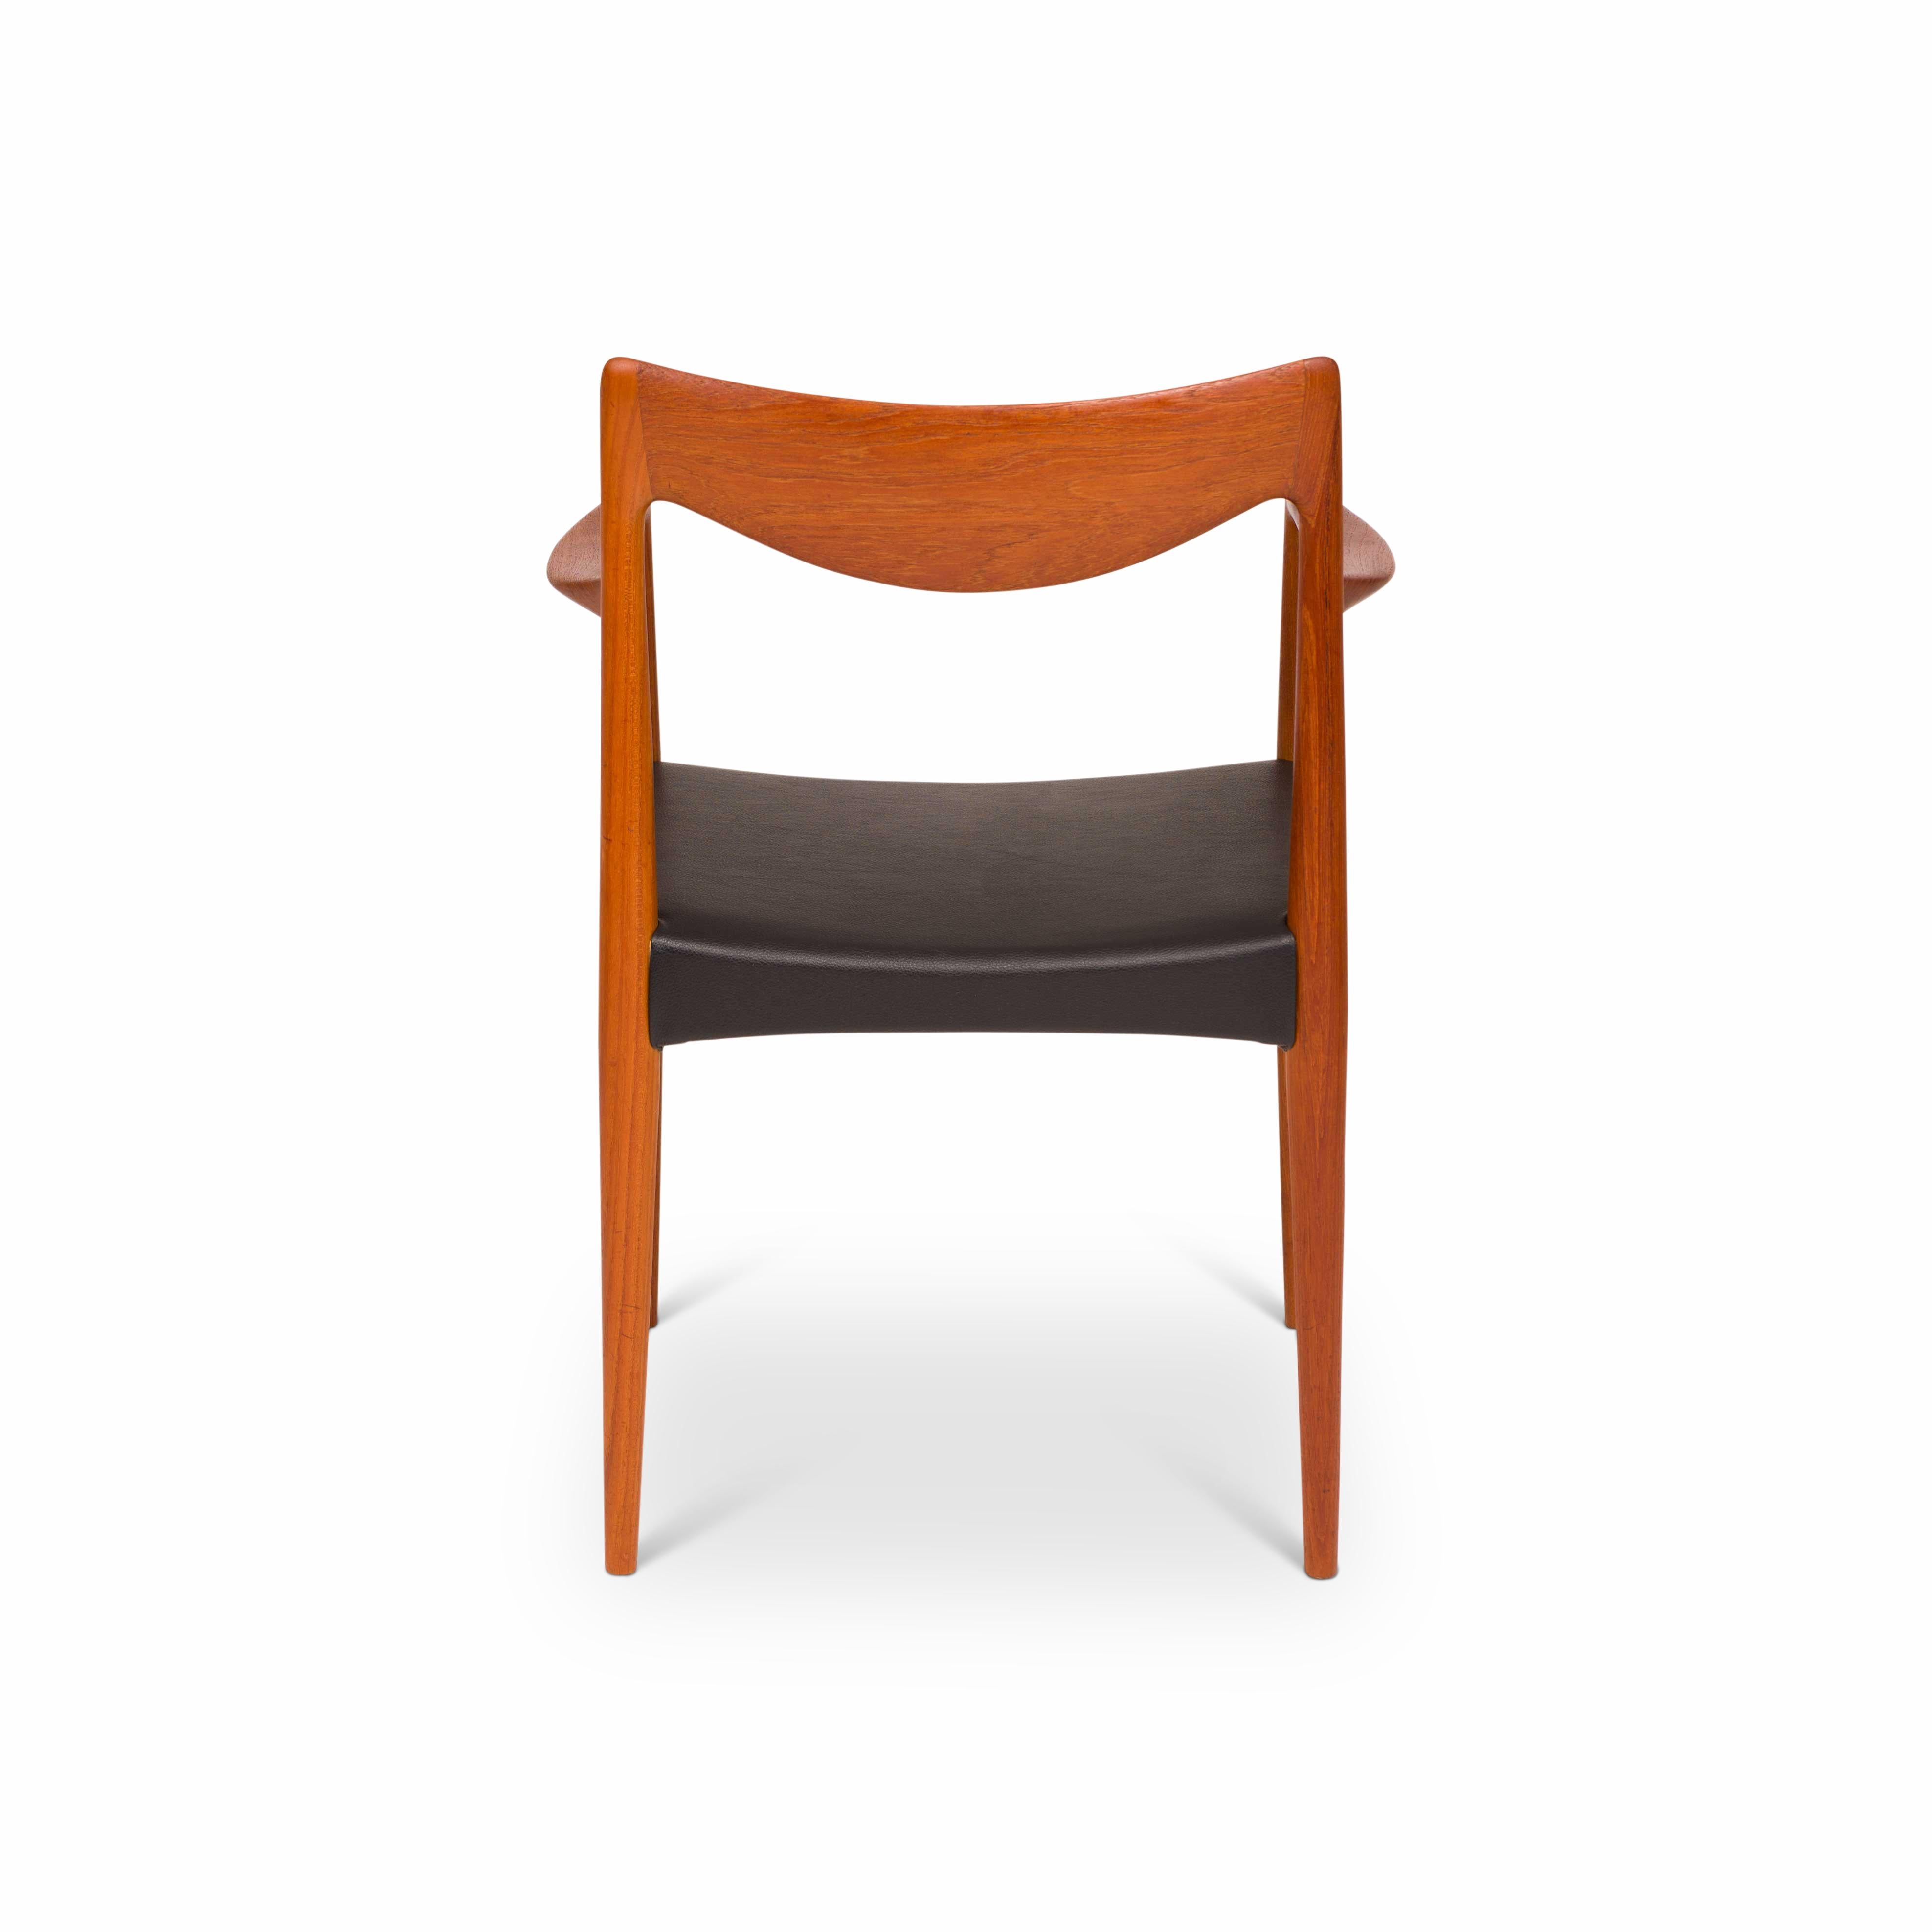 Rolf Rastad & Adolf Relling “Bambi” Teak Dining Chairs for Gustav Bahus 1960s For Sale 1